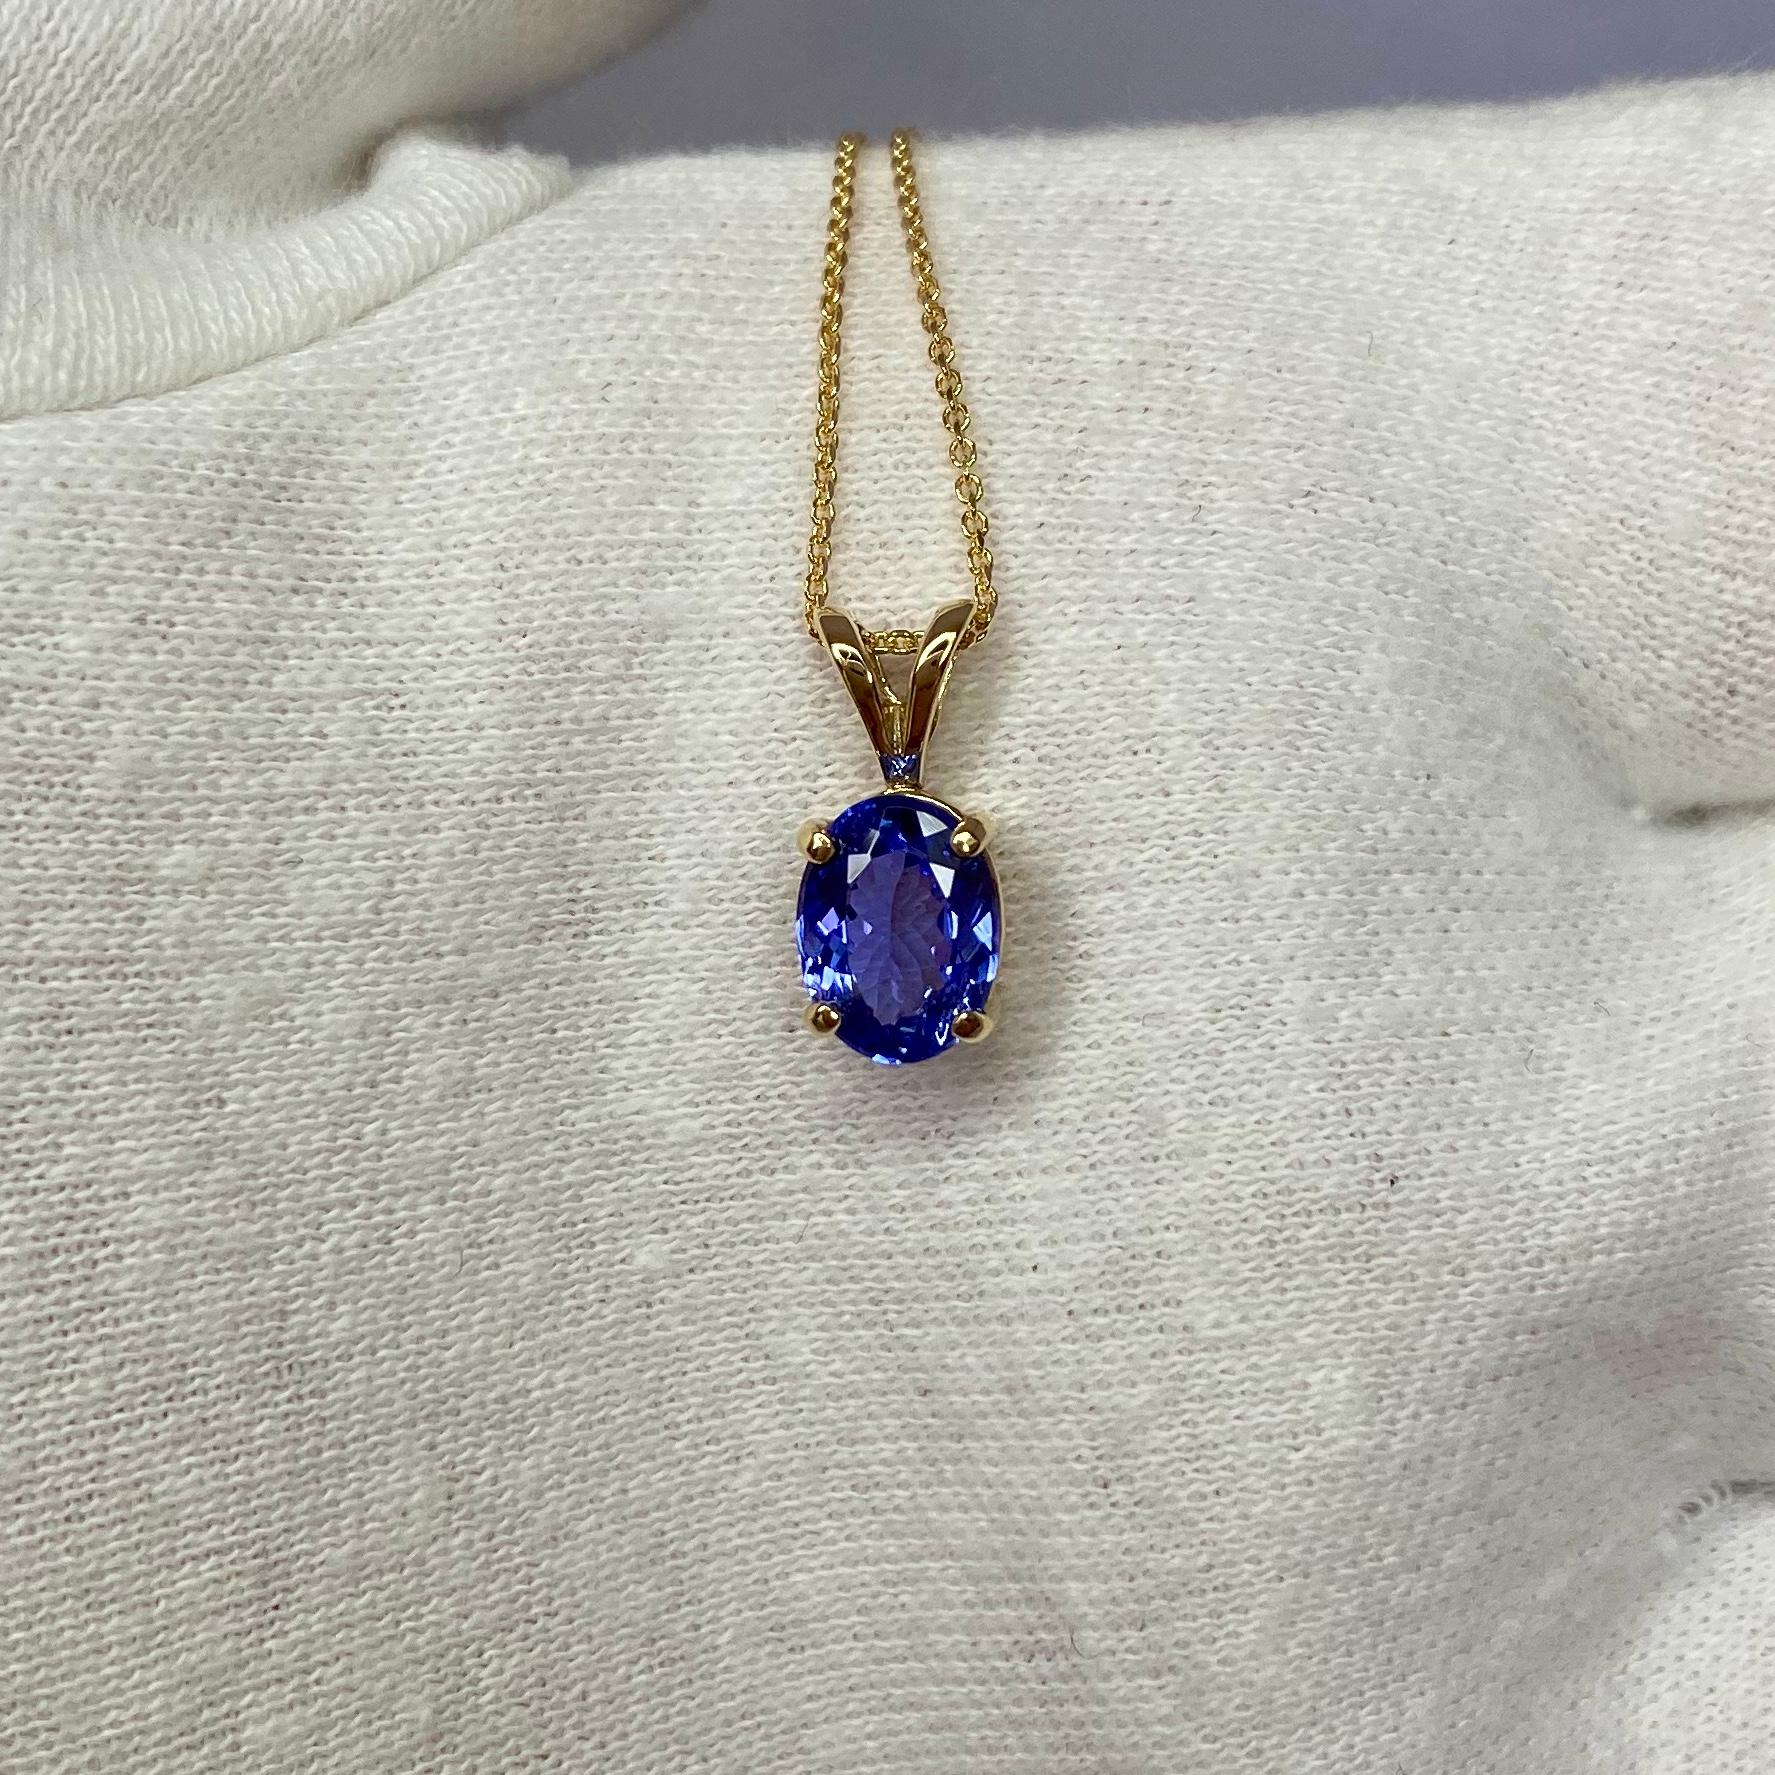 Women's or Men's Vivid Blue Violet 1.03 Carat Tanzanite Solitaire Yellow Gold Pendant Necklace